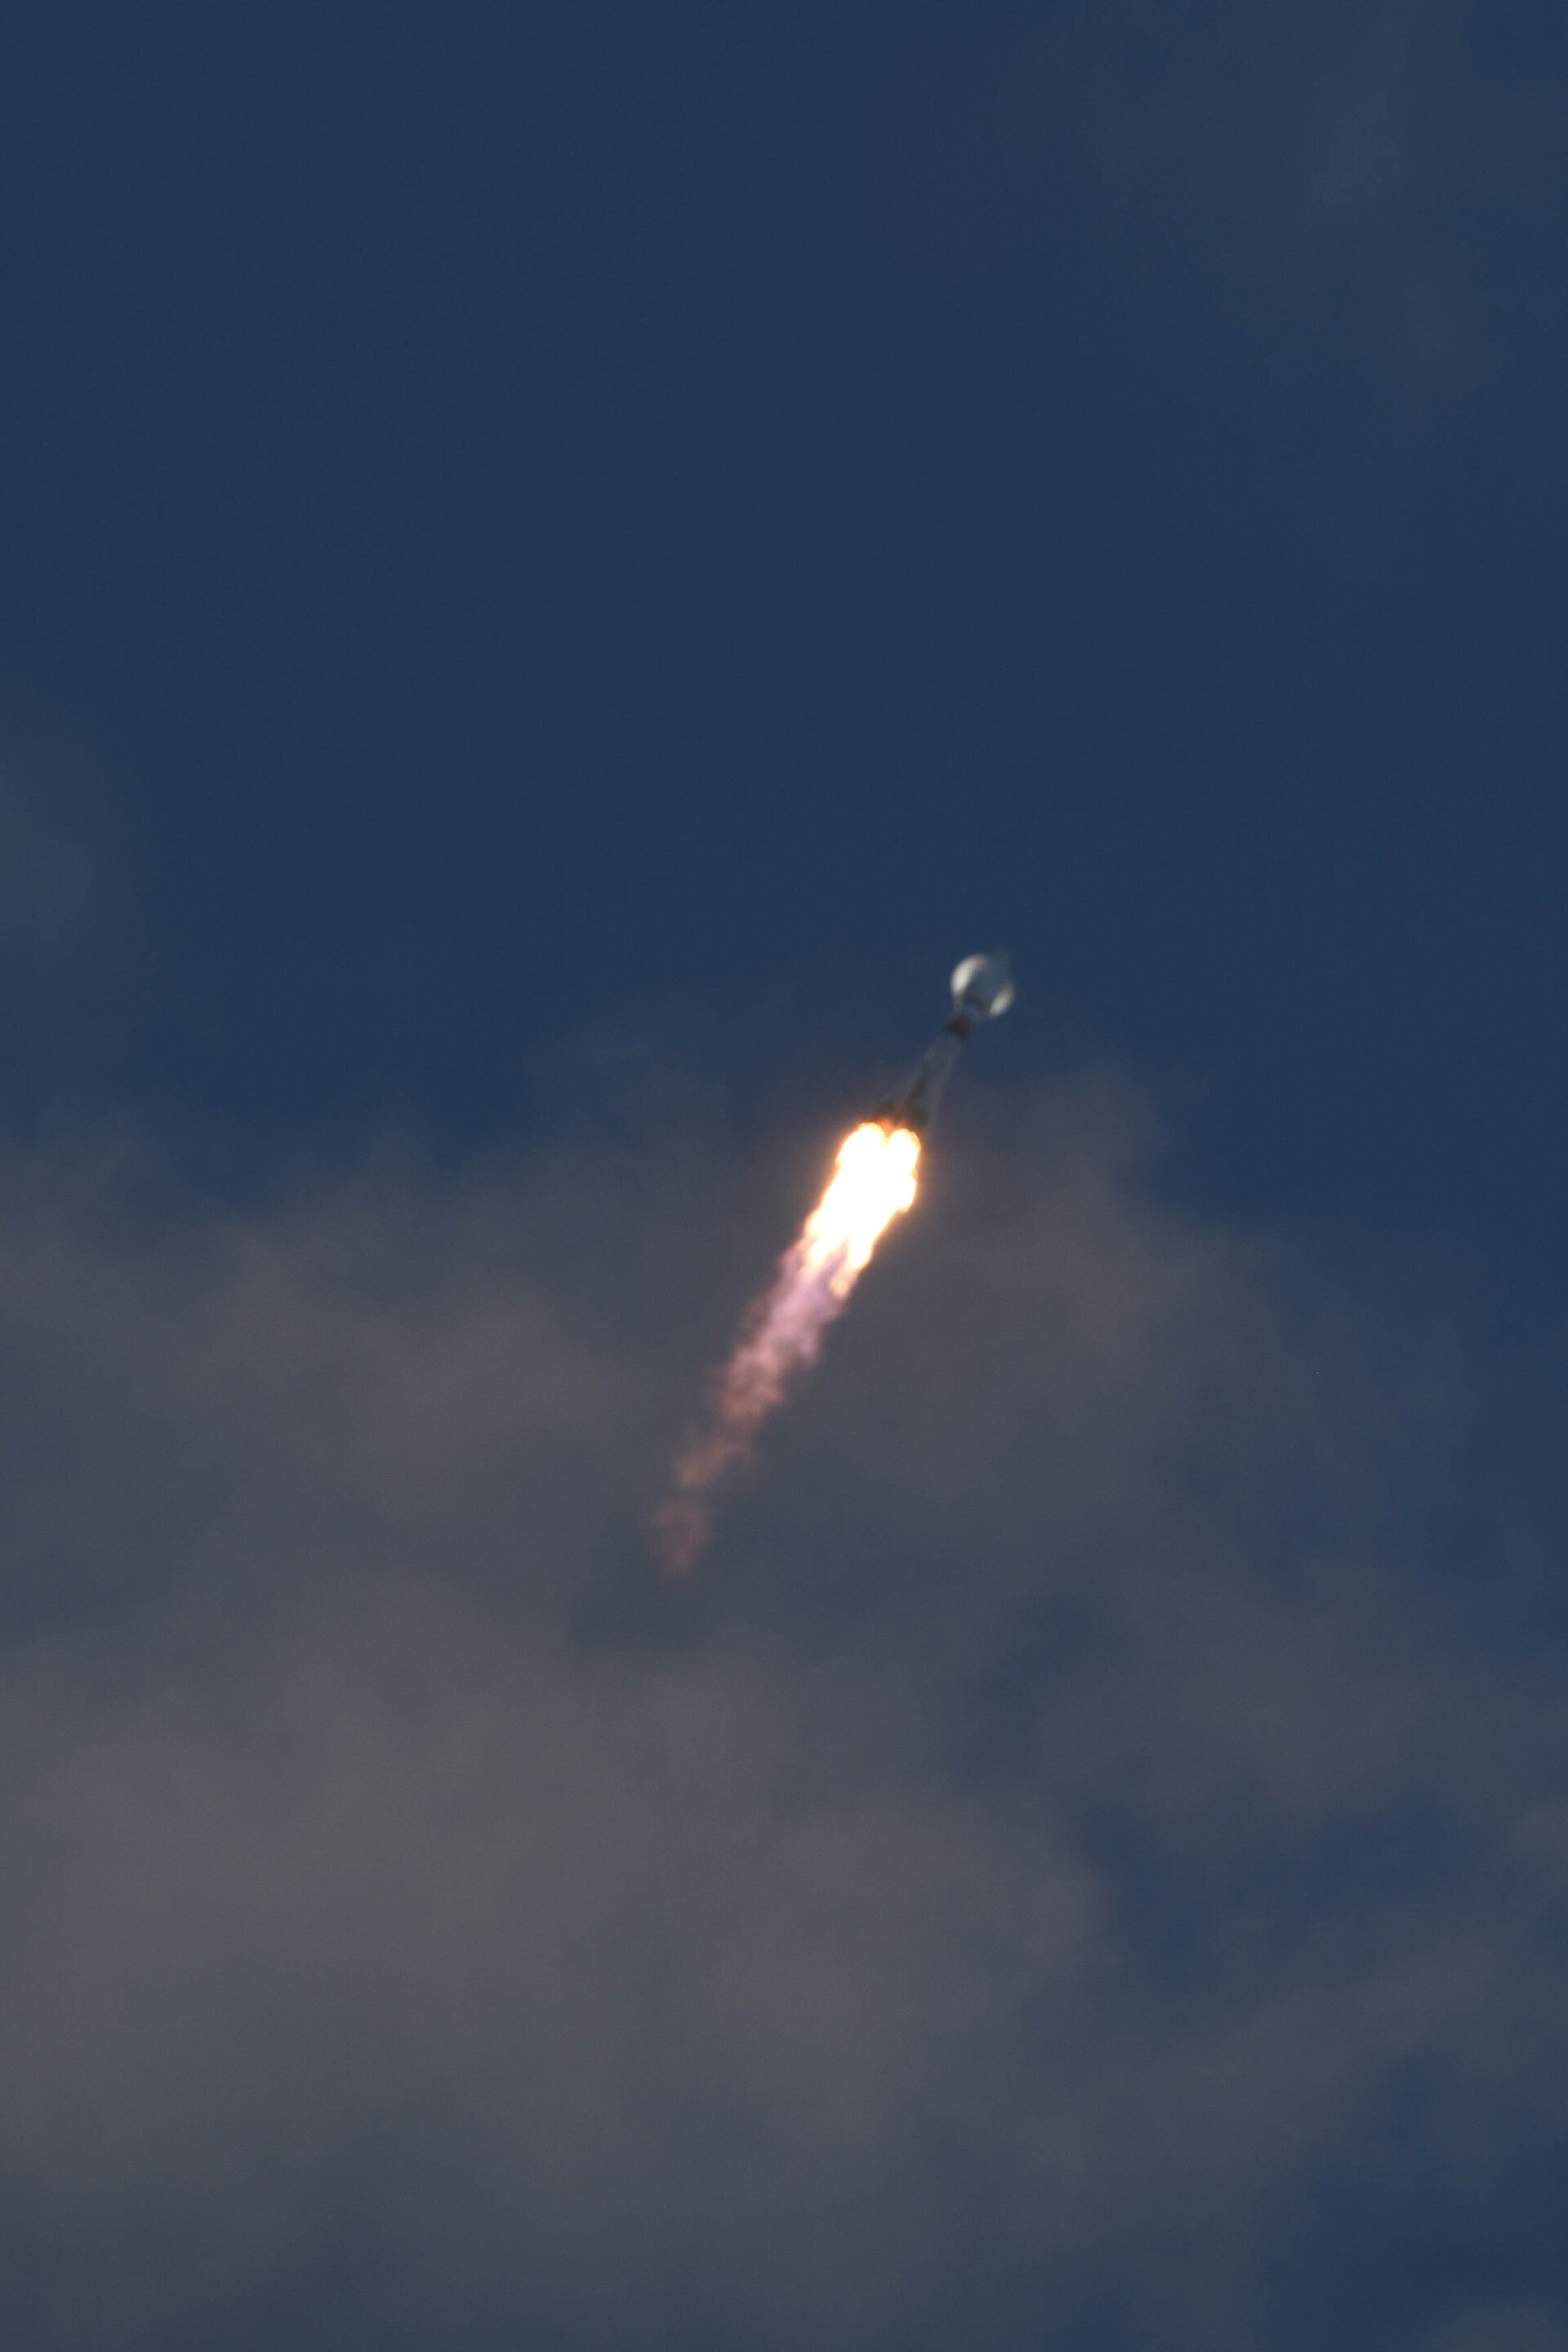 Sentinel-1B lifts off